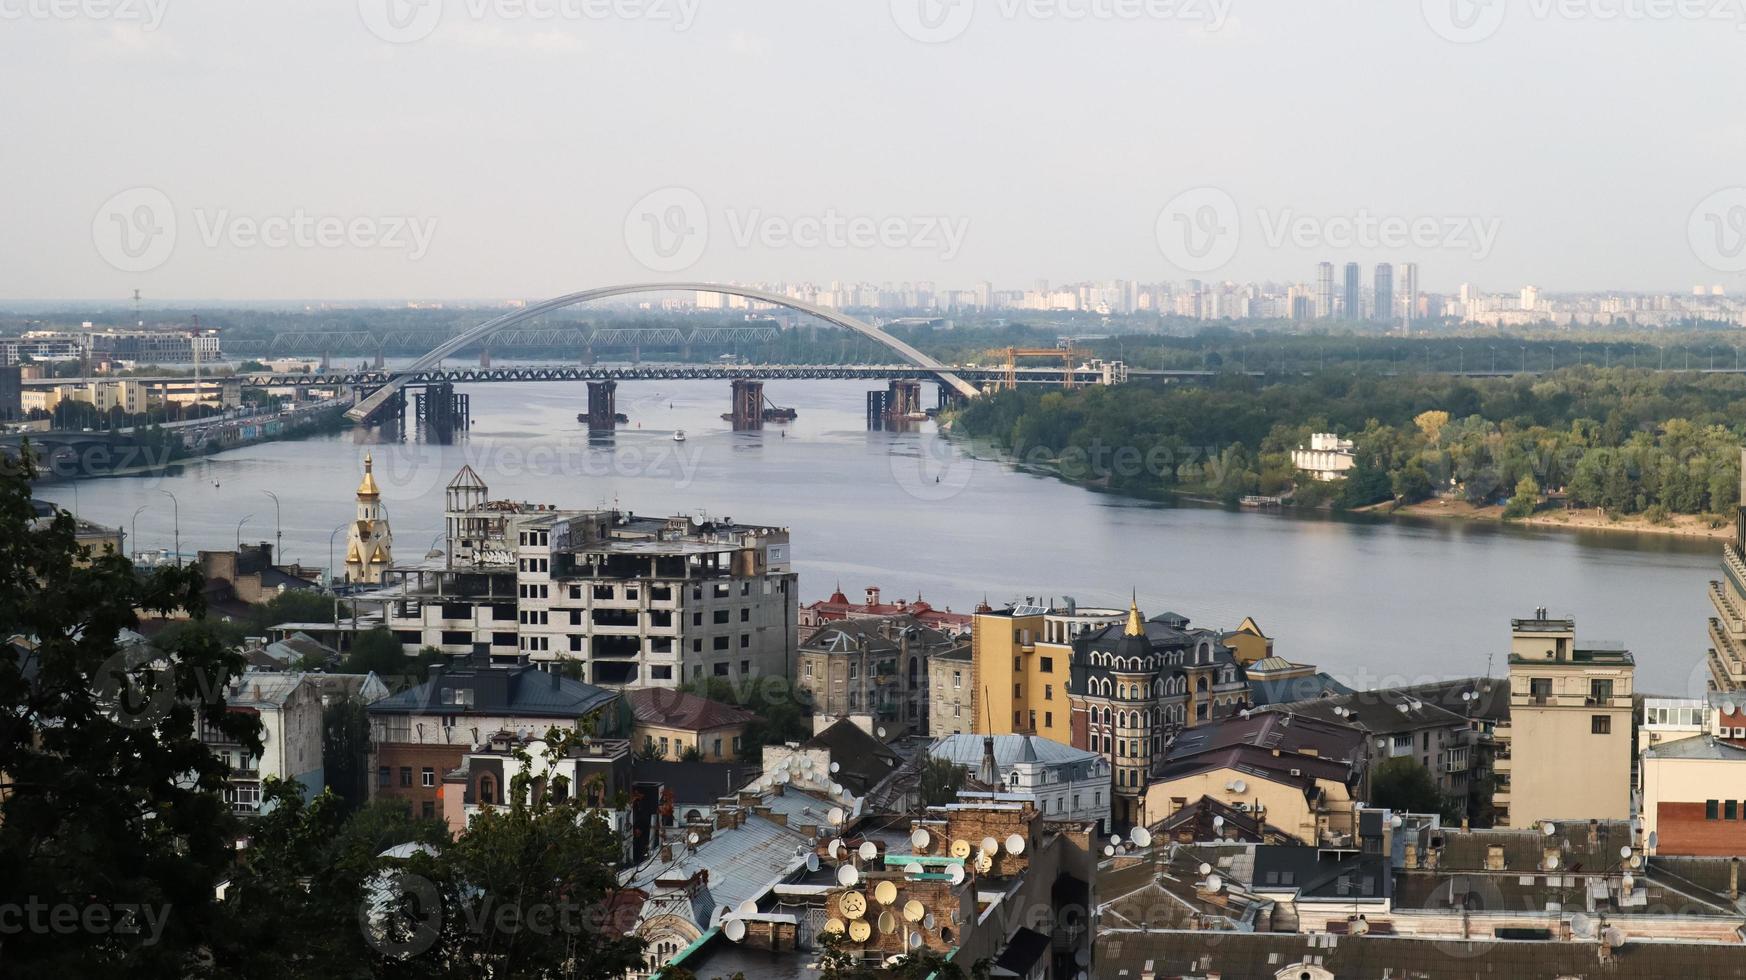 bovenaanzicht van het oude historische deel van de stad kiev. vozdvizhenka-gebied op podol en de rivier de dnjepr vanaf de voetgangersbrug. mooi stadslandschap. Oekraïne, Kiev - 6 september 2020. foto